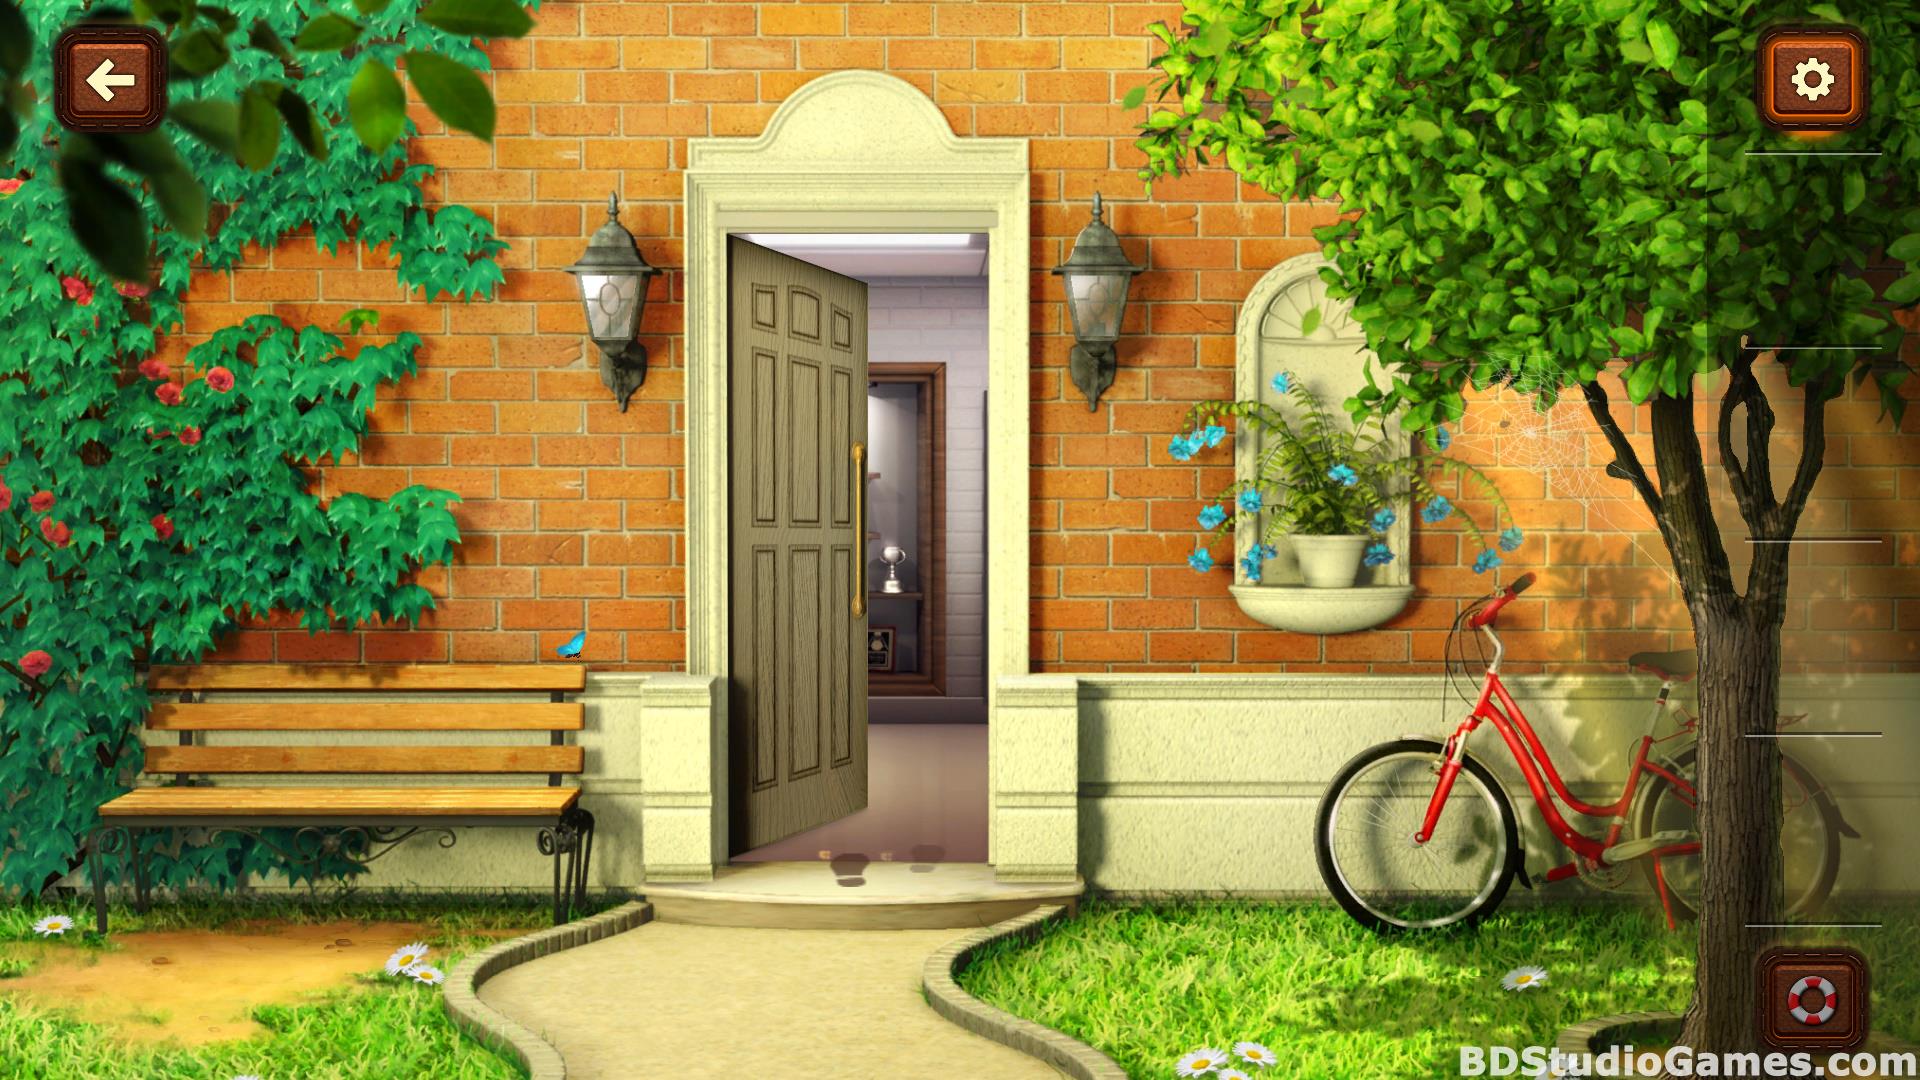 100 Doors Games: Escape From School Free Download Screenshots 08